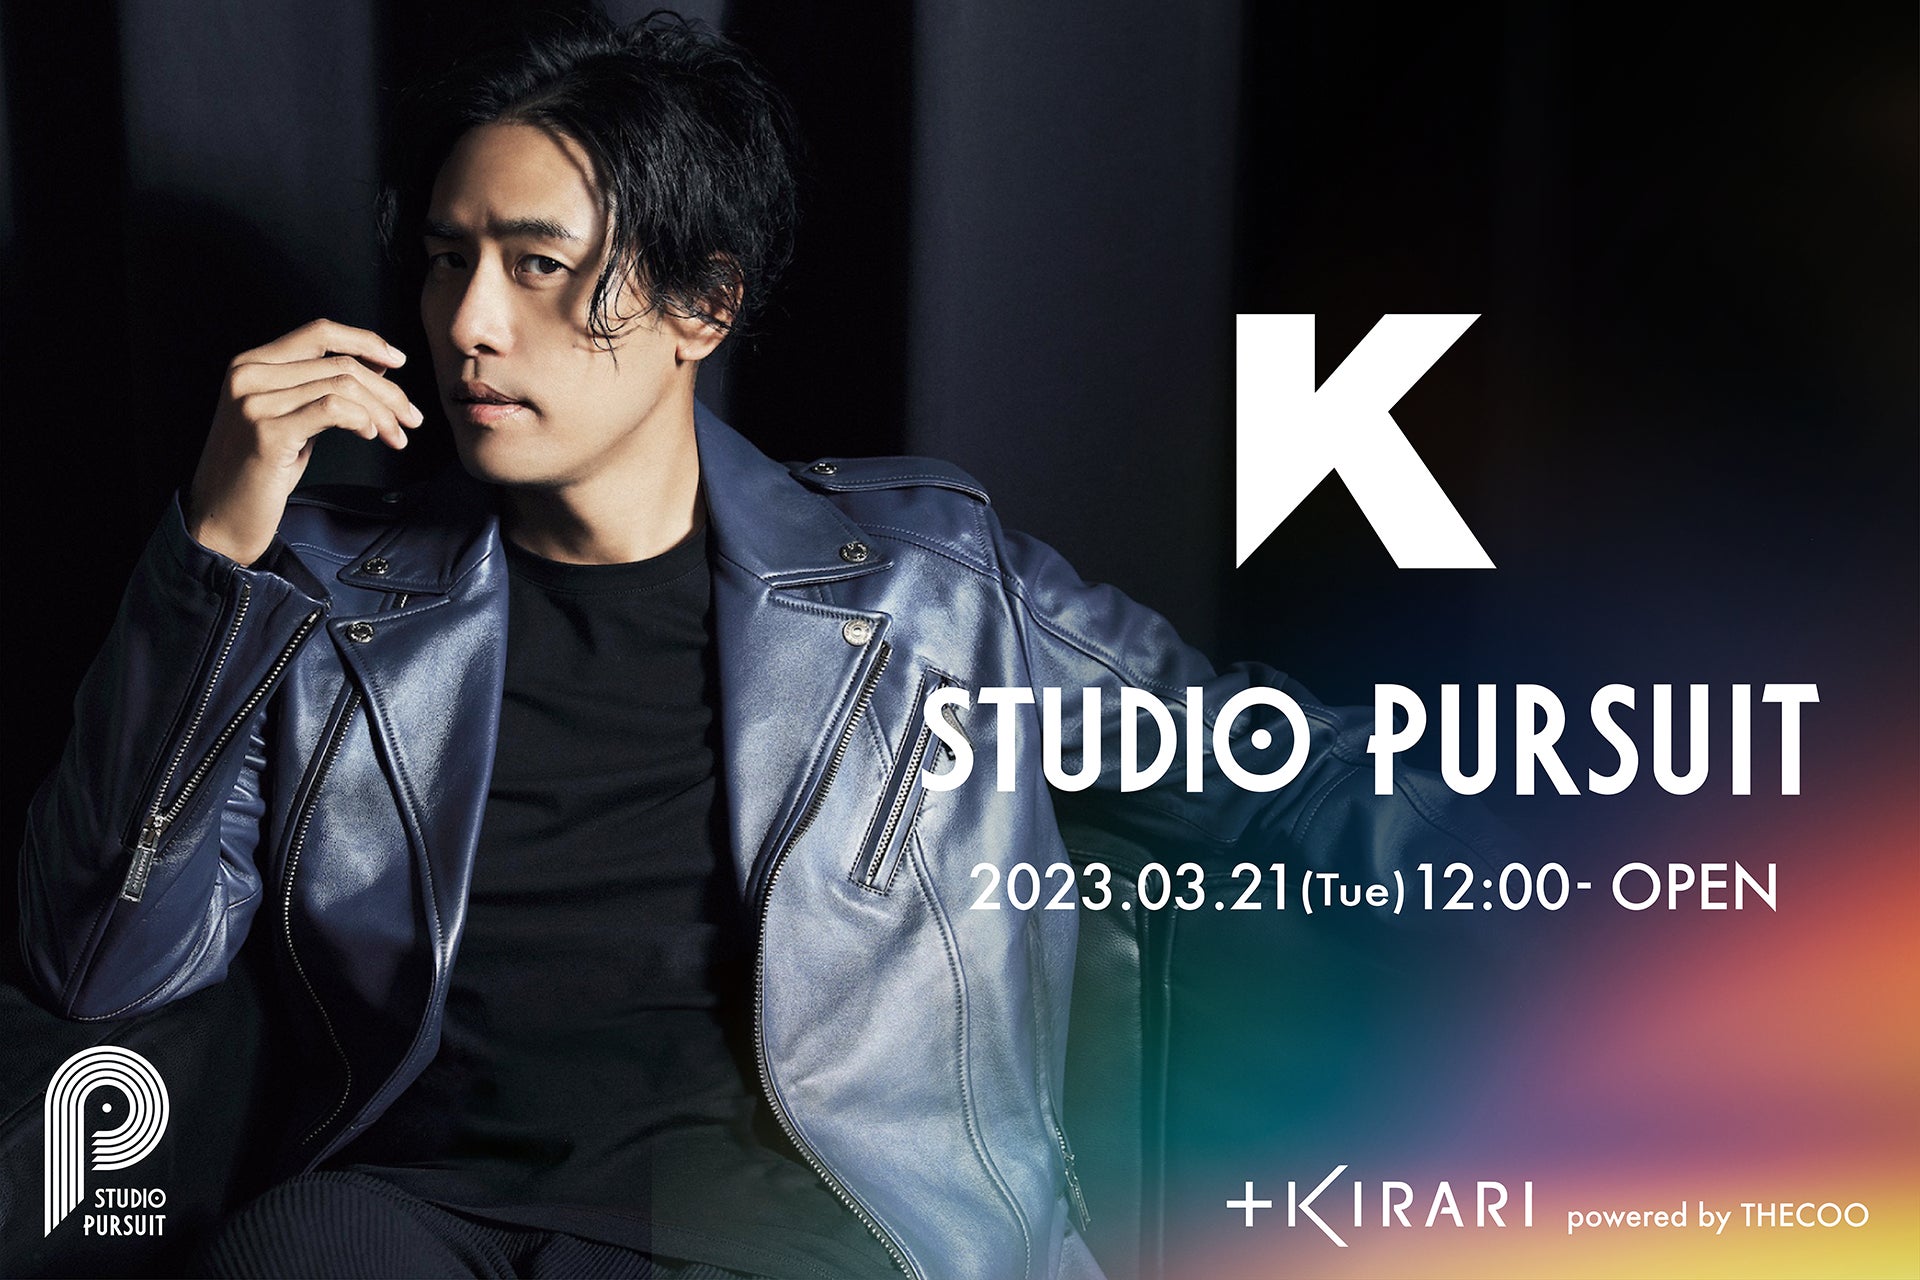 ドラマ「1リットルの涙」の主題歌「Only Human」でも知られる韓国出身のシンガーソングライター K「＋KIRARI」にて公式ファンコミュニティ【STUDIO PURSUIT】オープンのサブ画像1